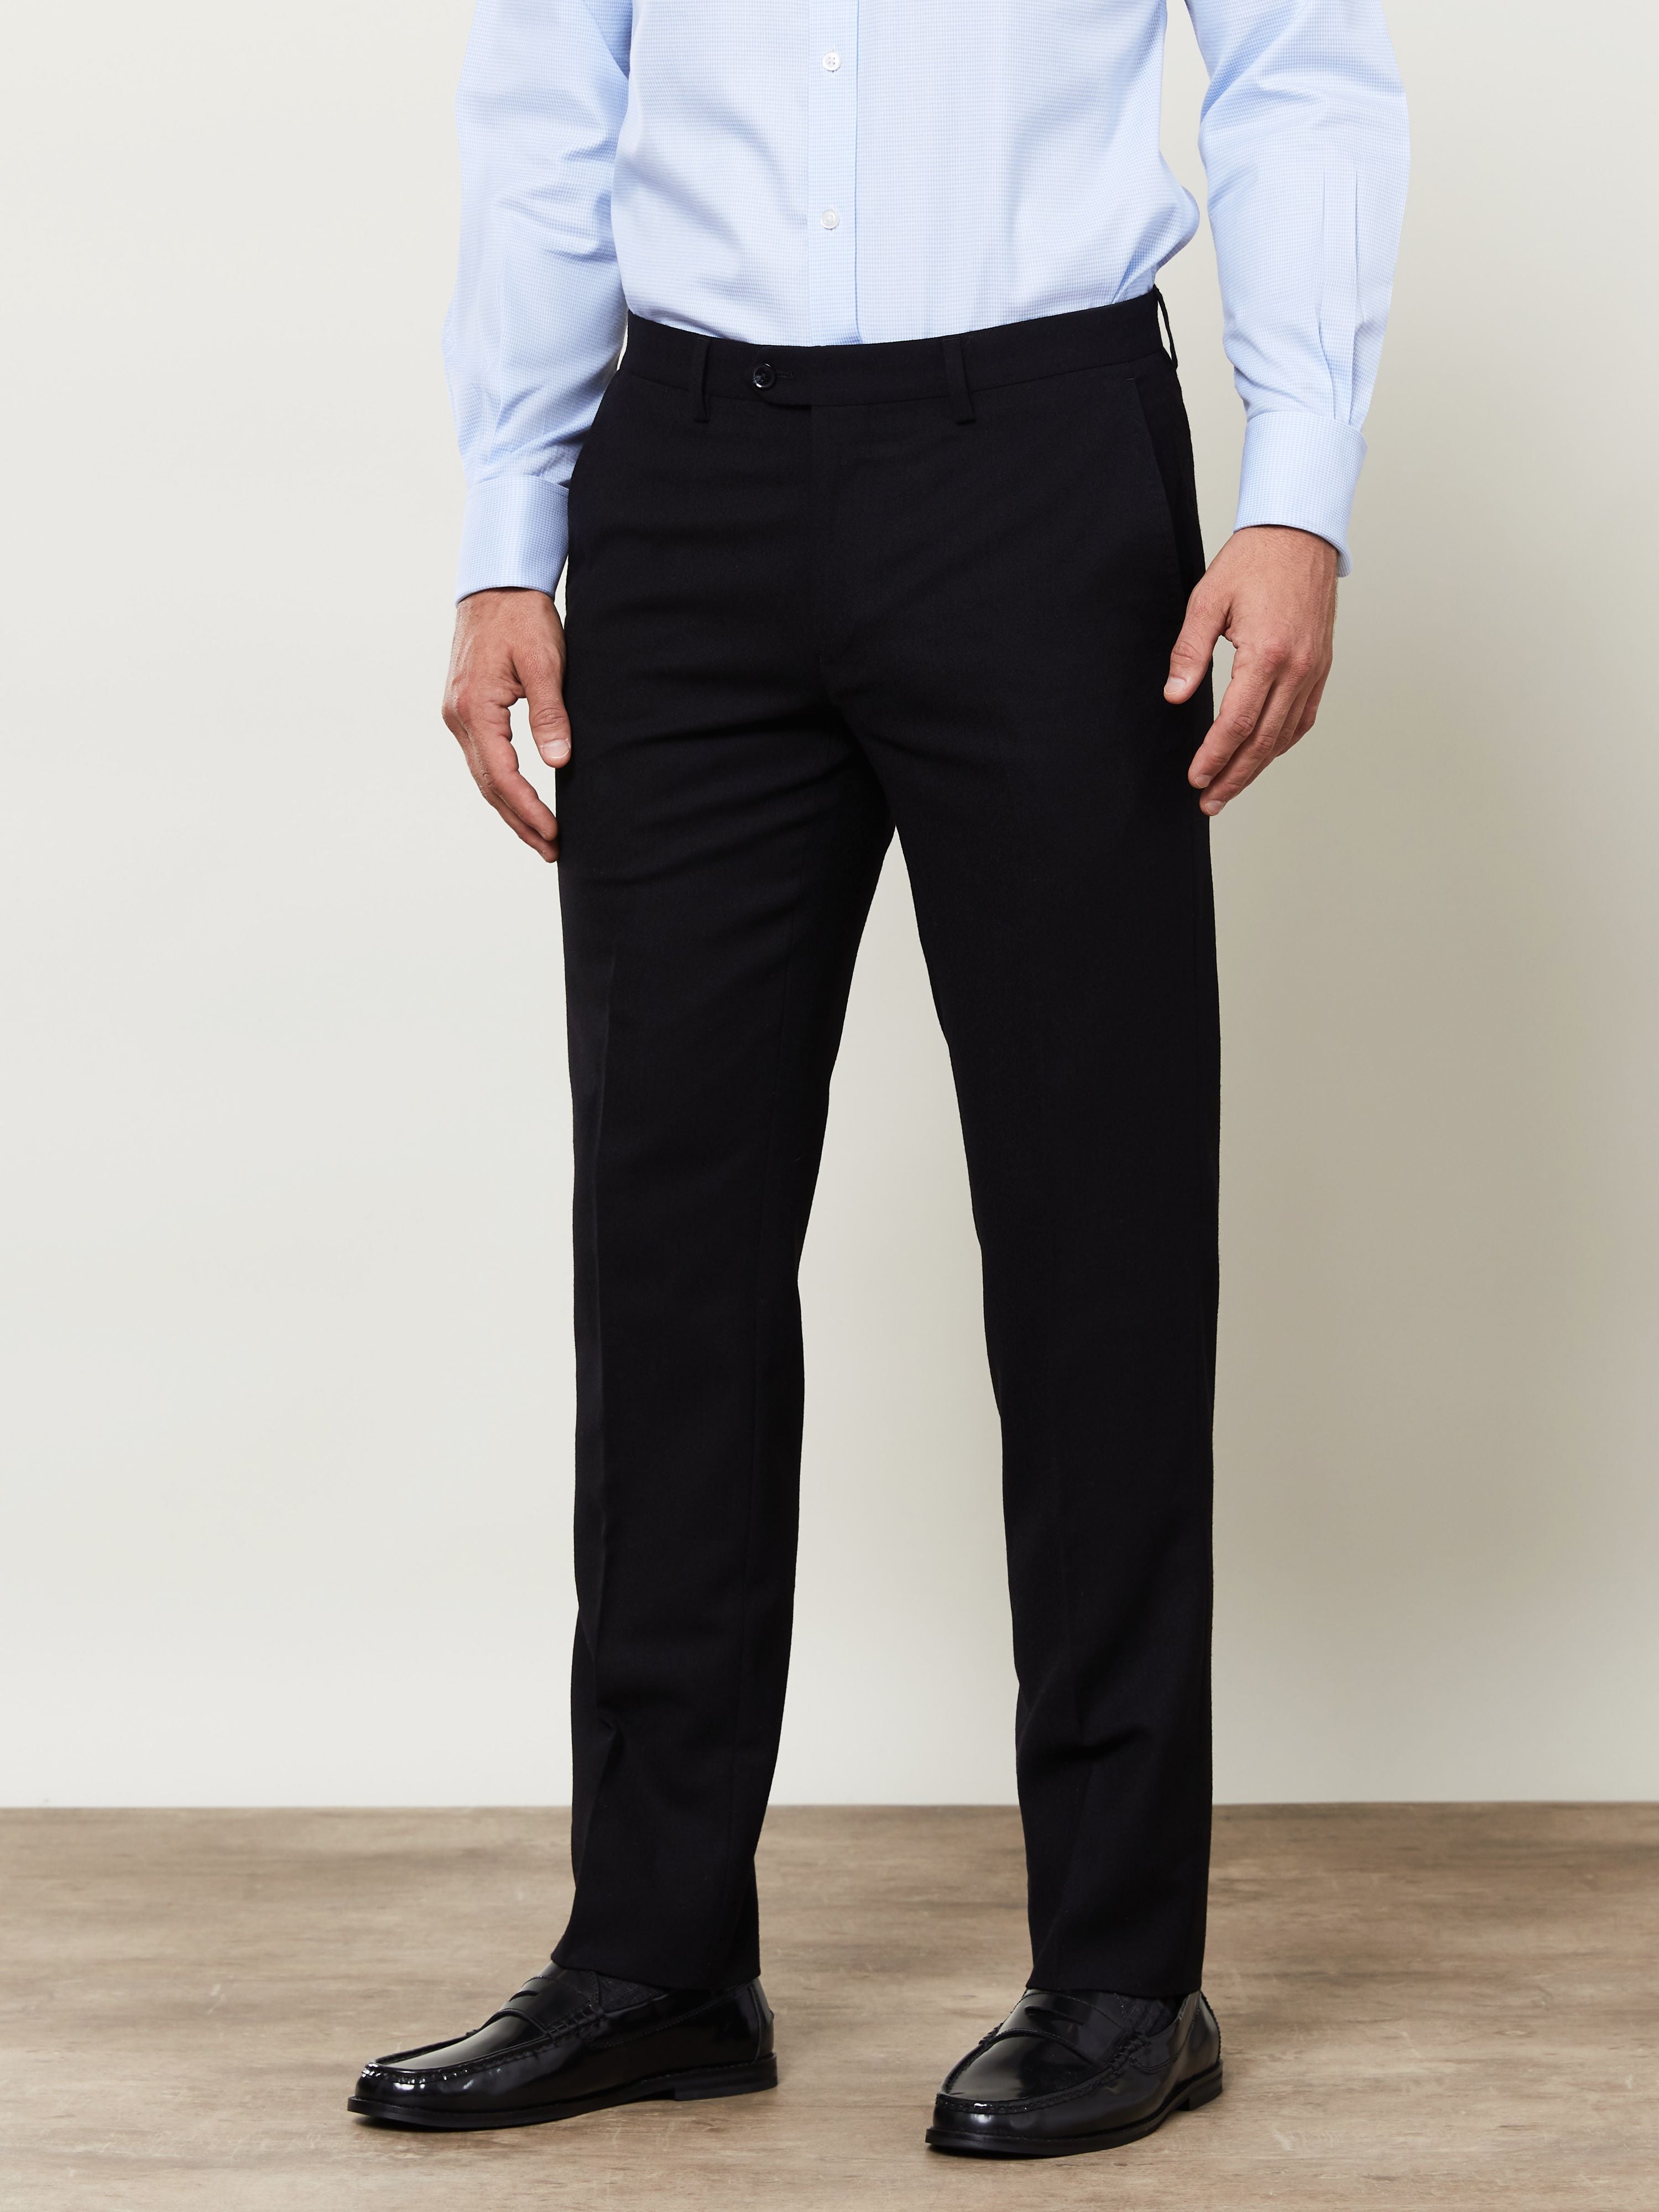 Idol Skinny Fit Plain Black Suit Trouser - T.M.Lewin Shop Online